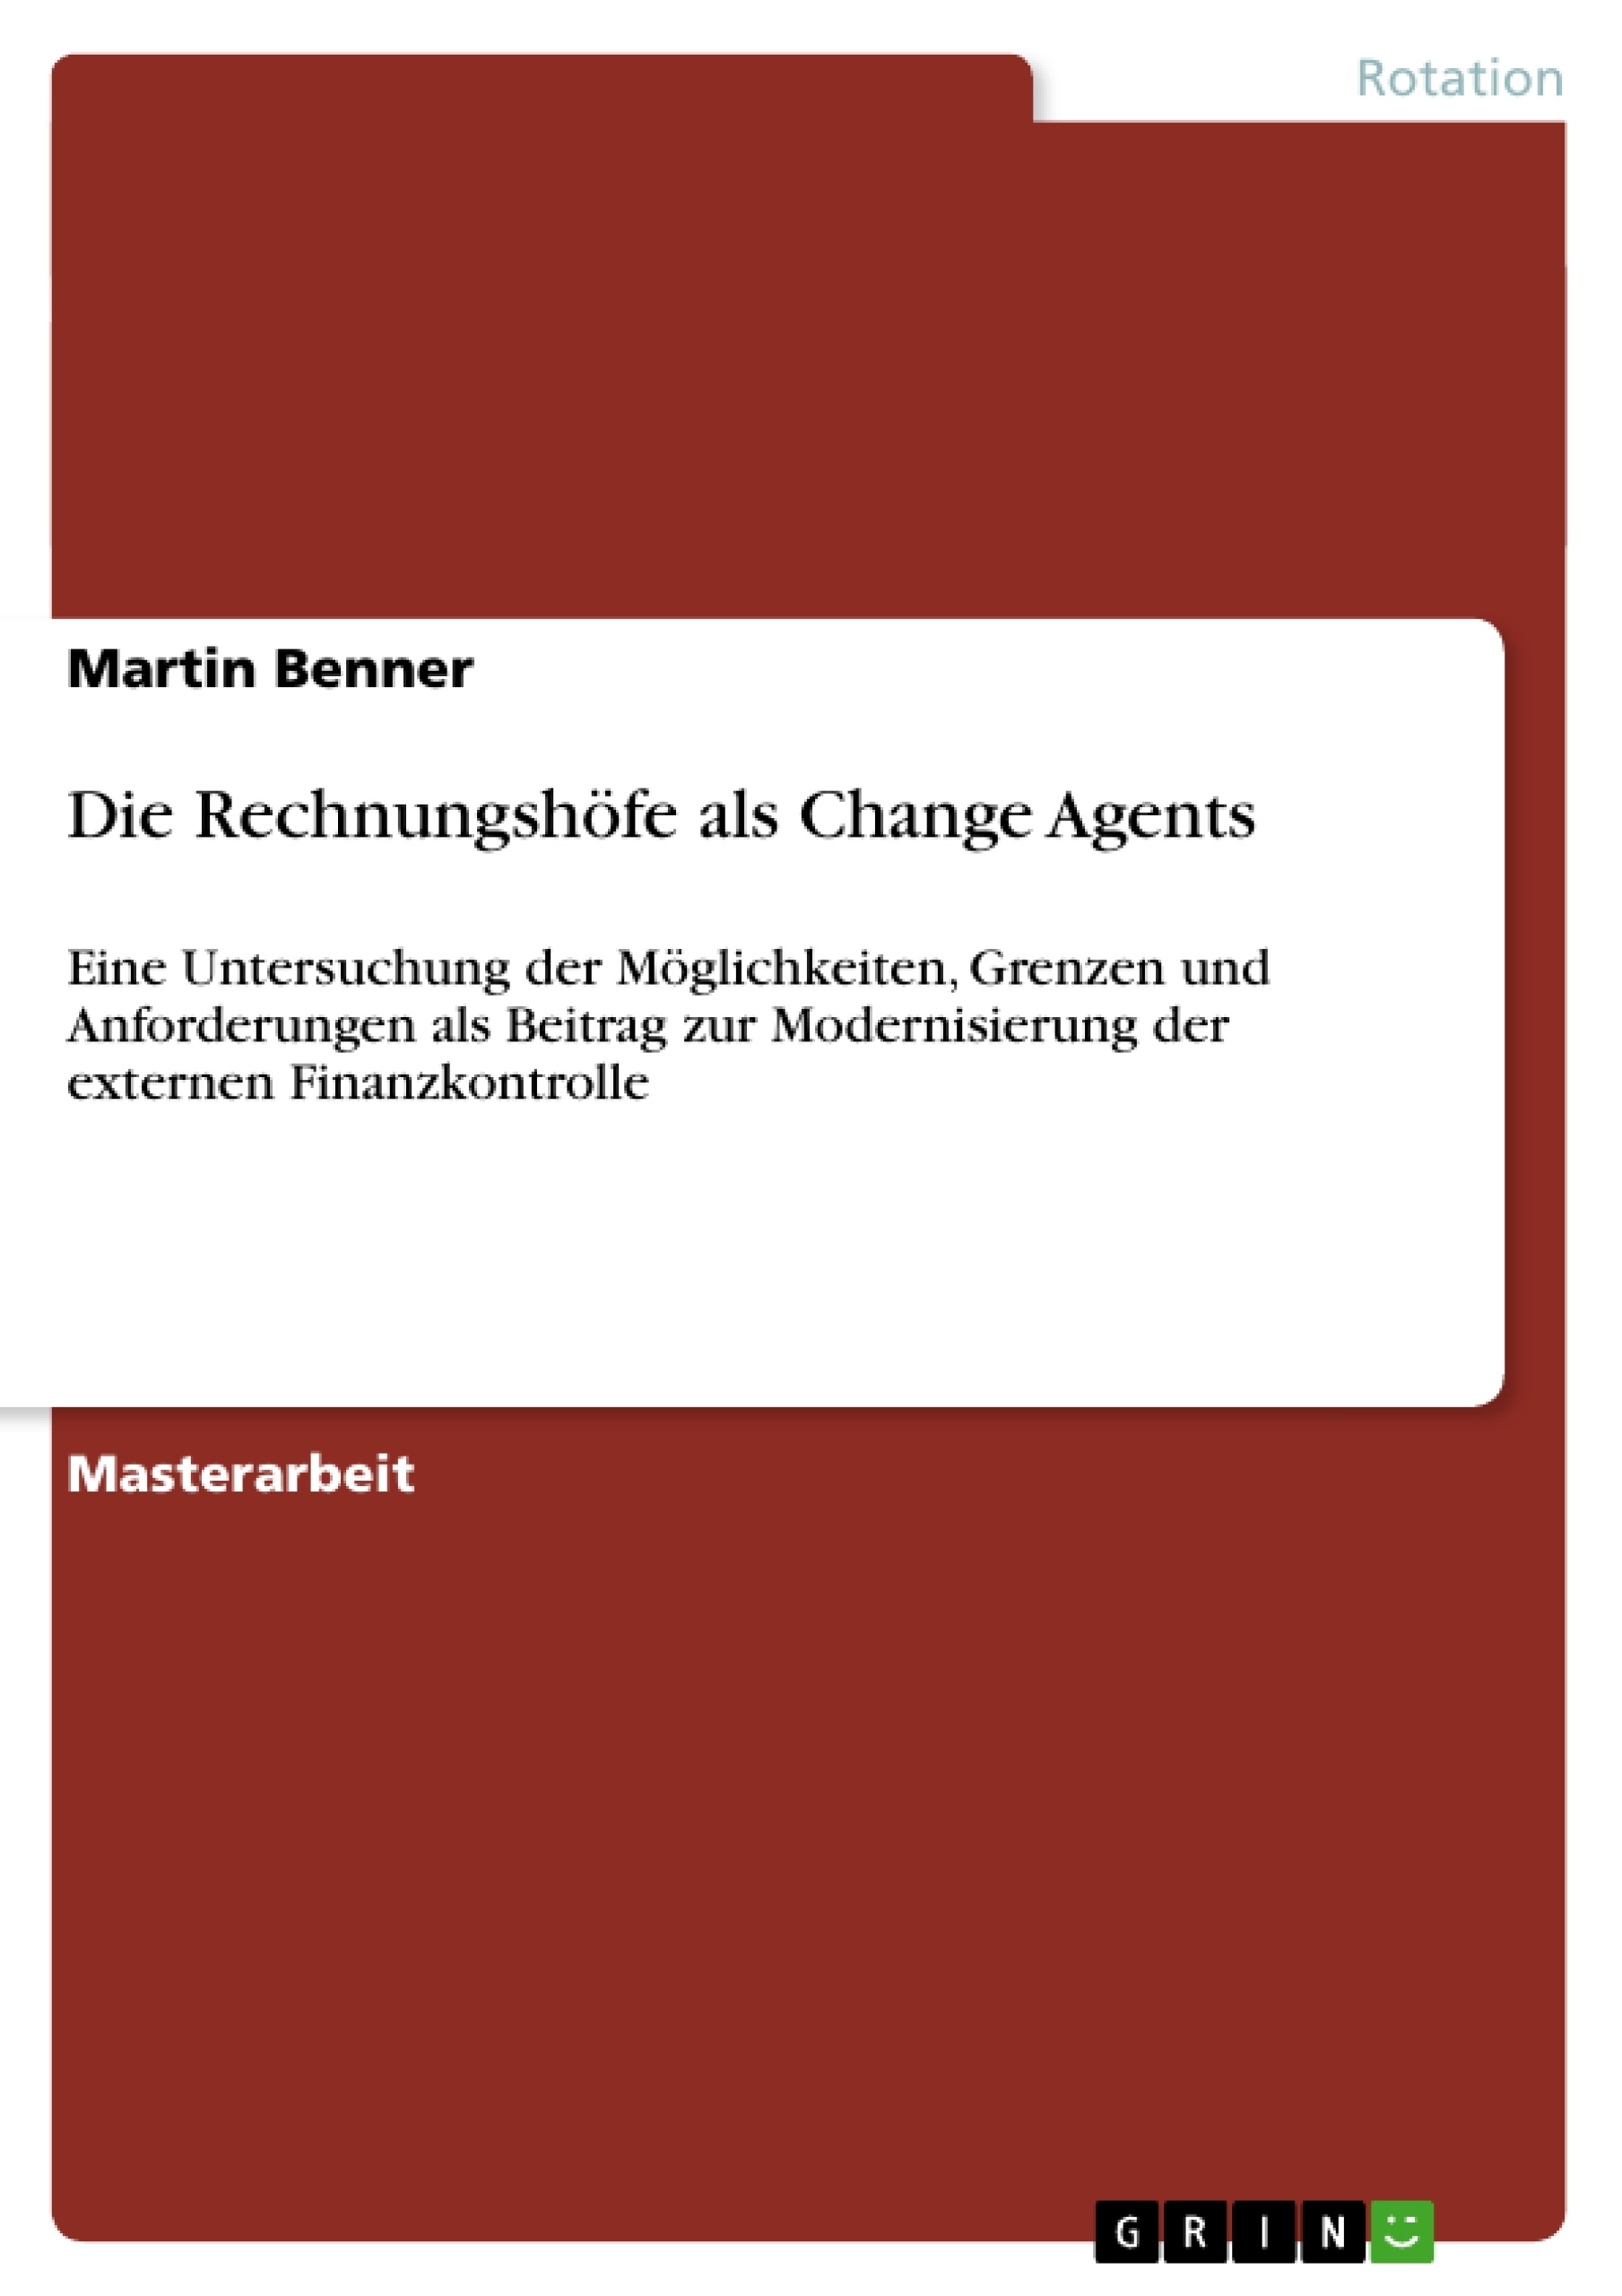 Título: Die Rechnungshöfe als Change Agents 